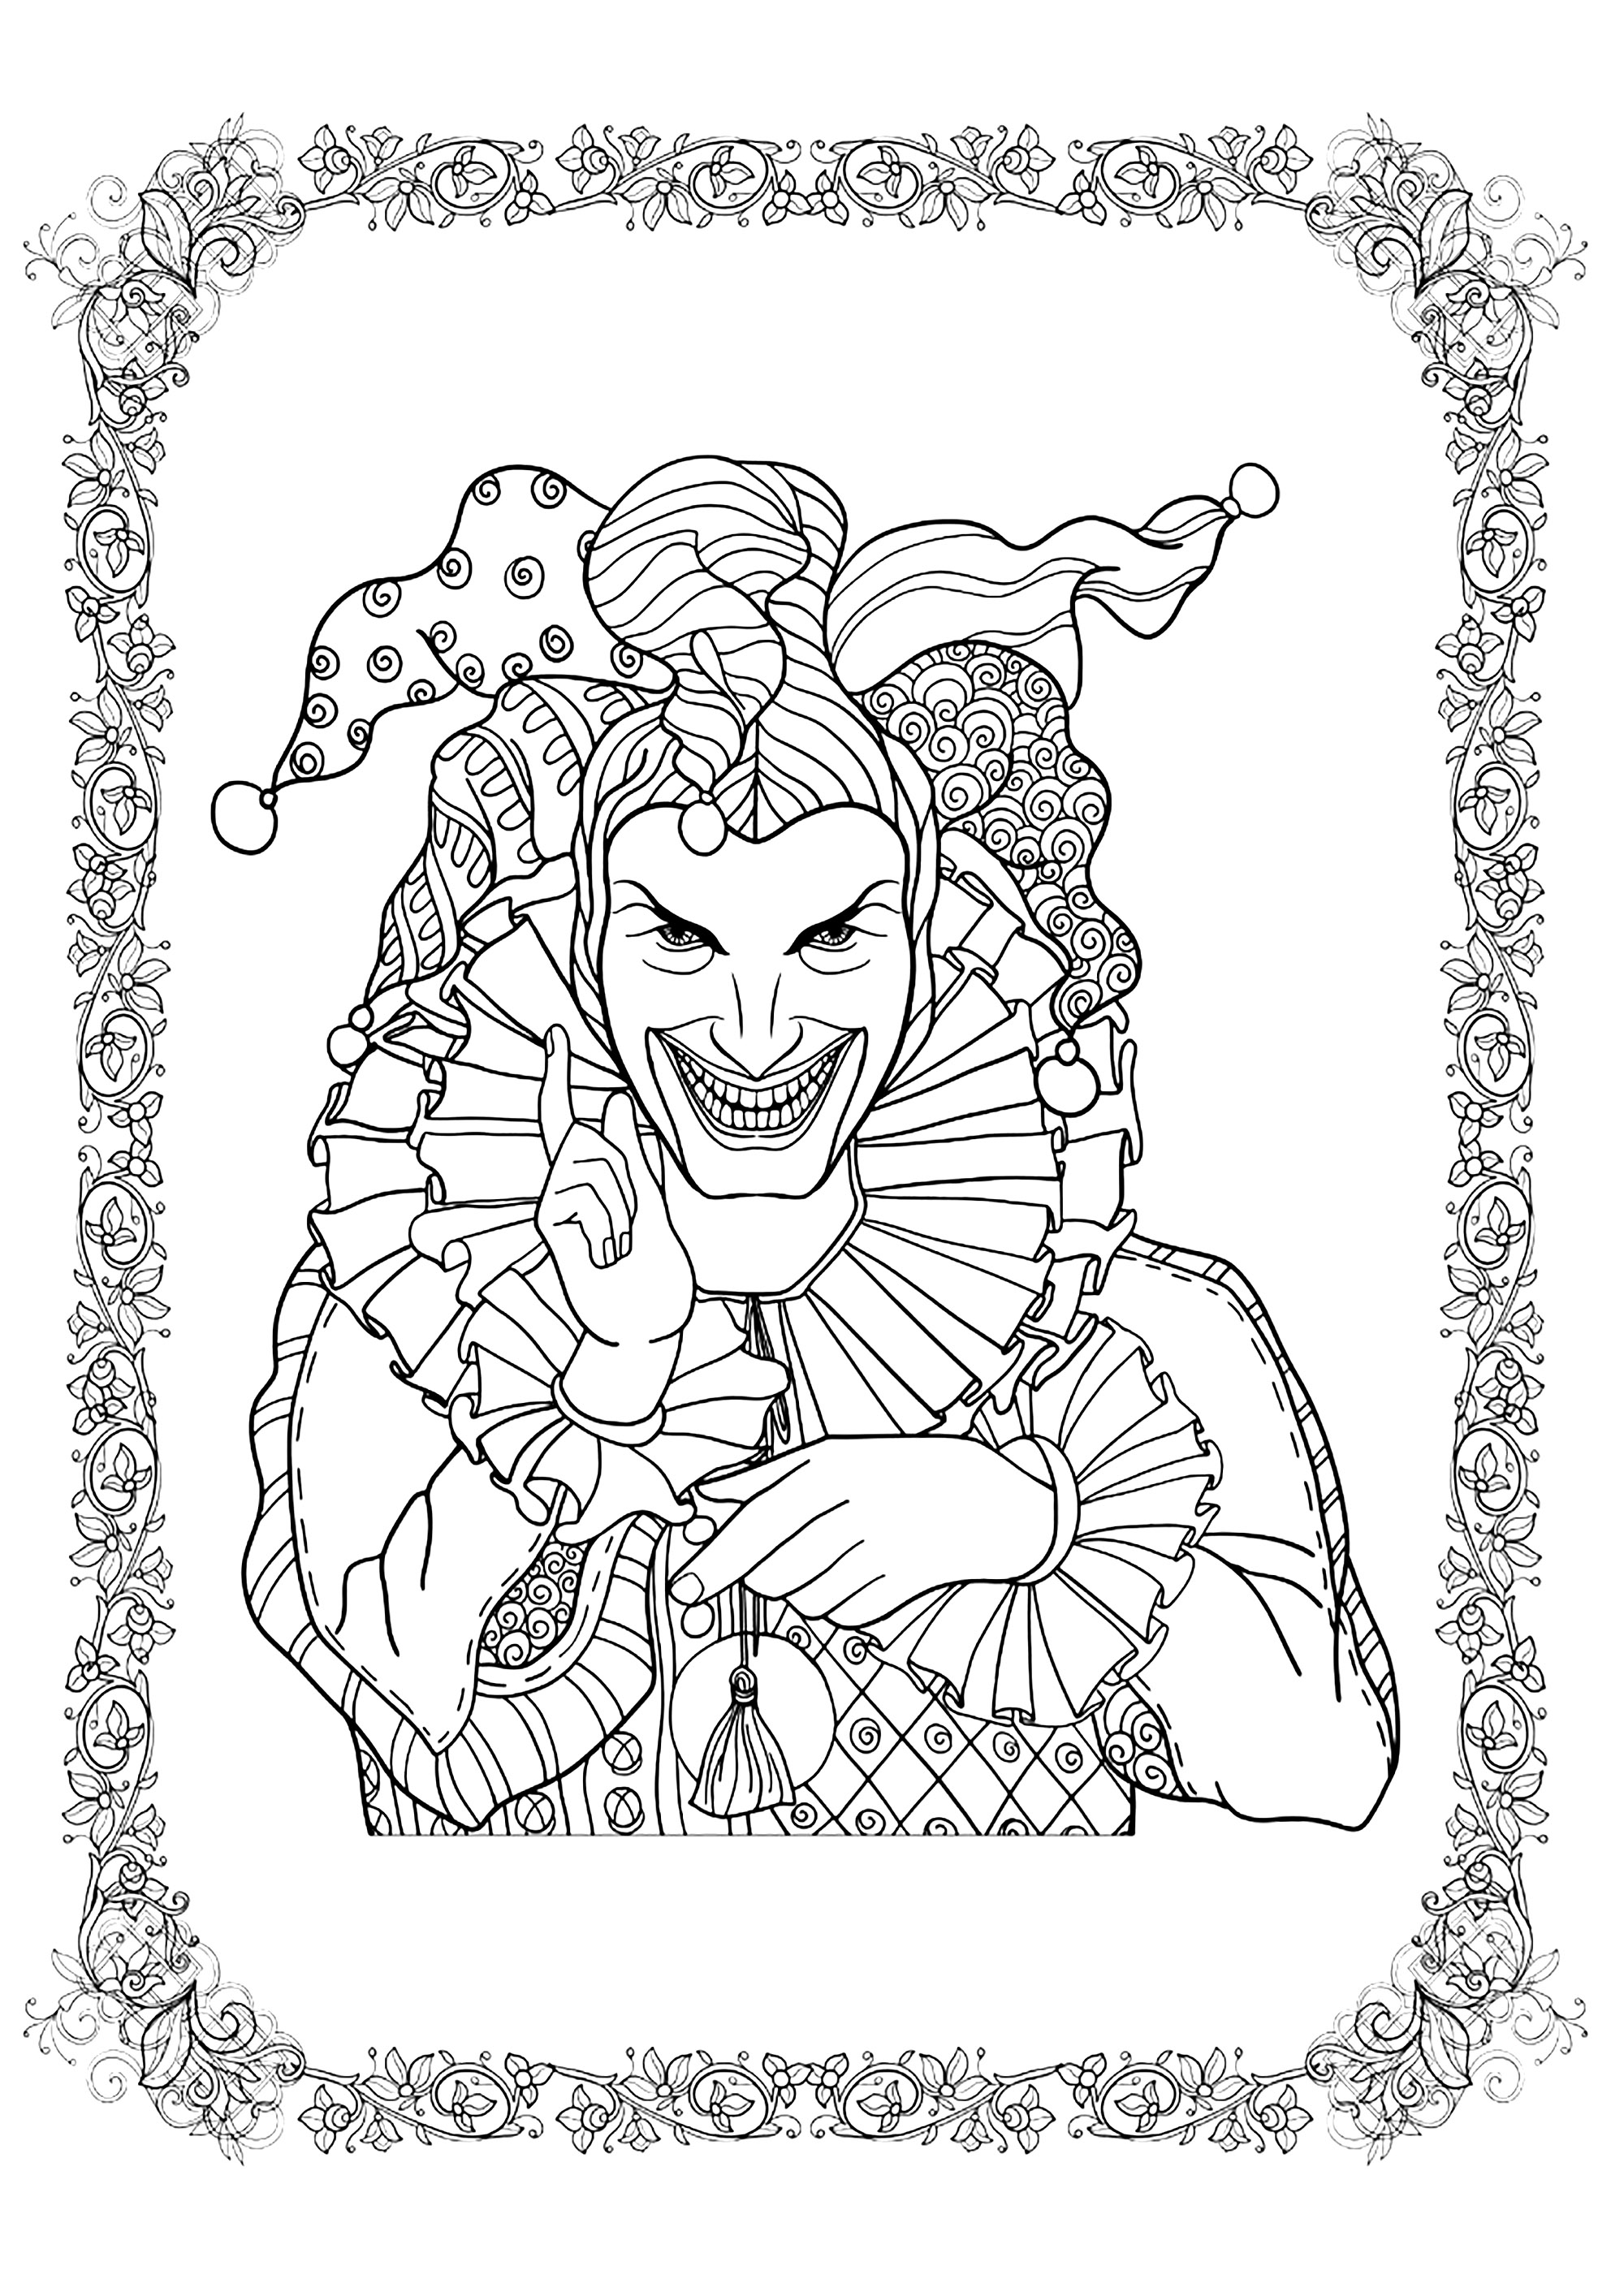 Le Joker prêt à tout pour Halloween. Coloriez également le joli cadre aux motifs complexes, Source : 123rf   Artiste : Helenlane